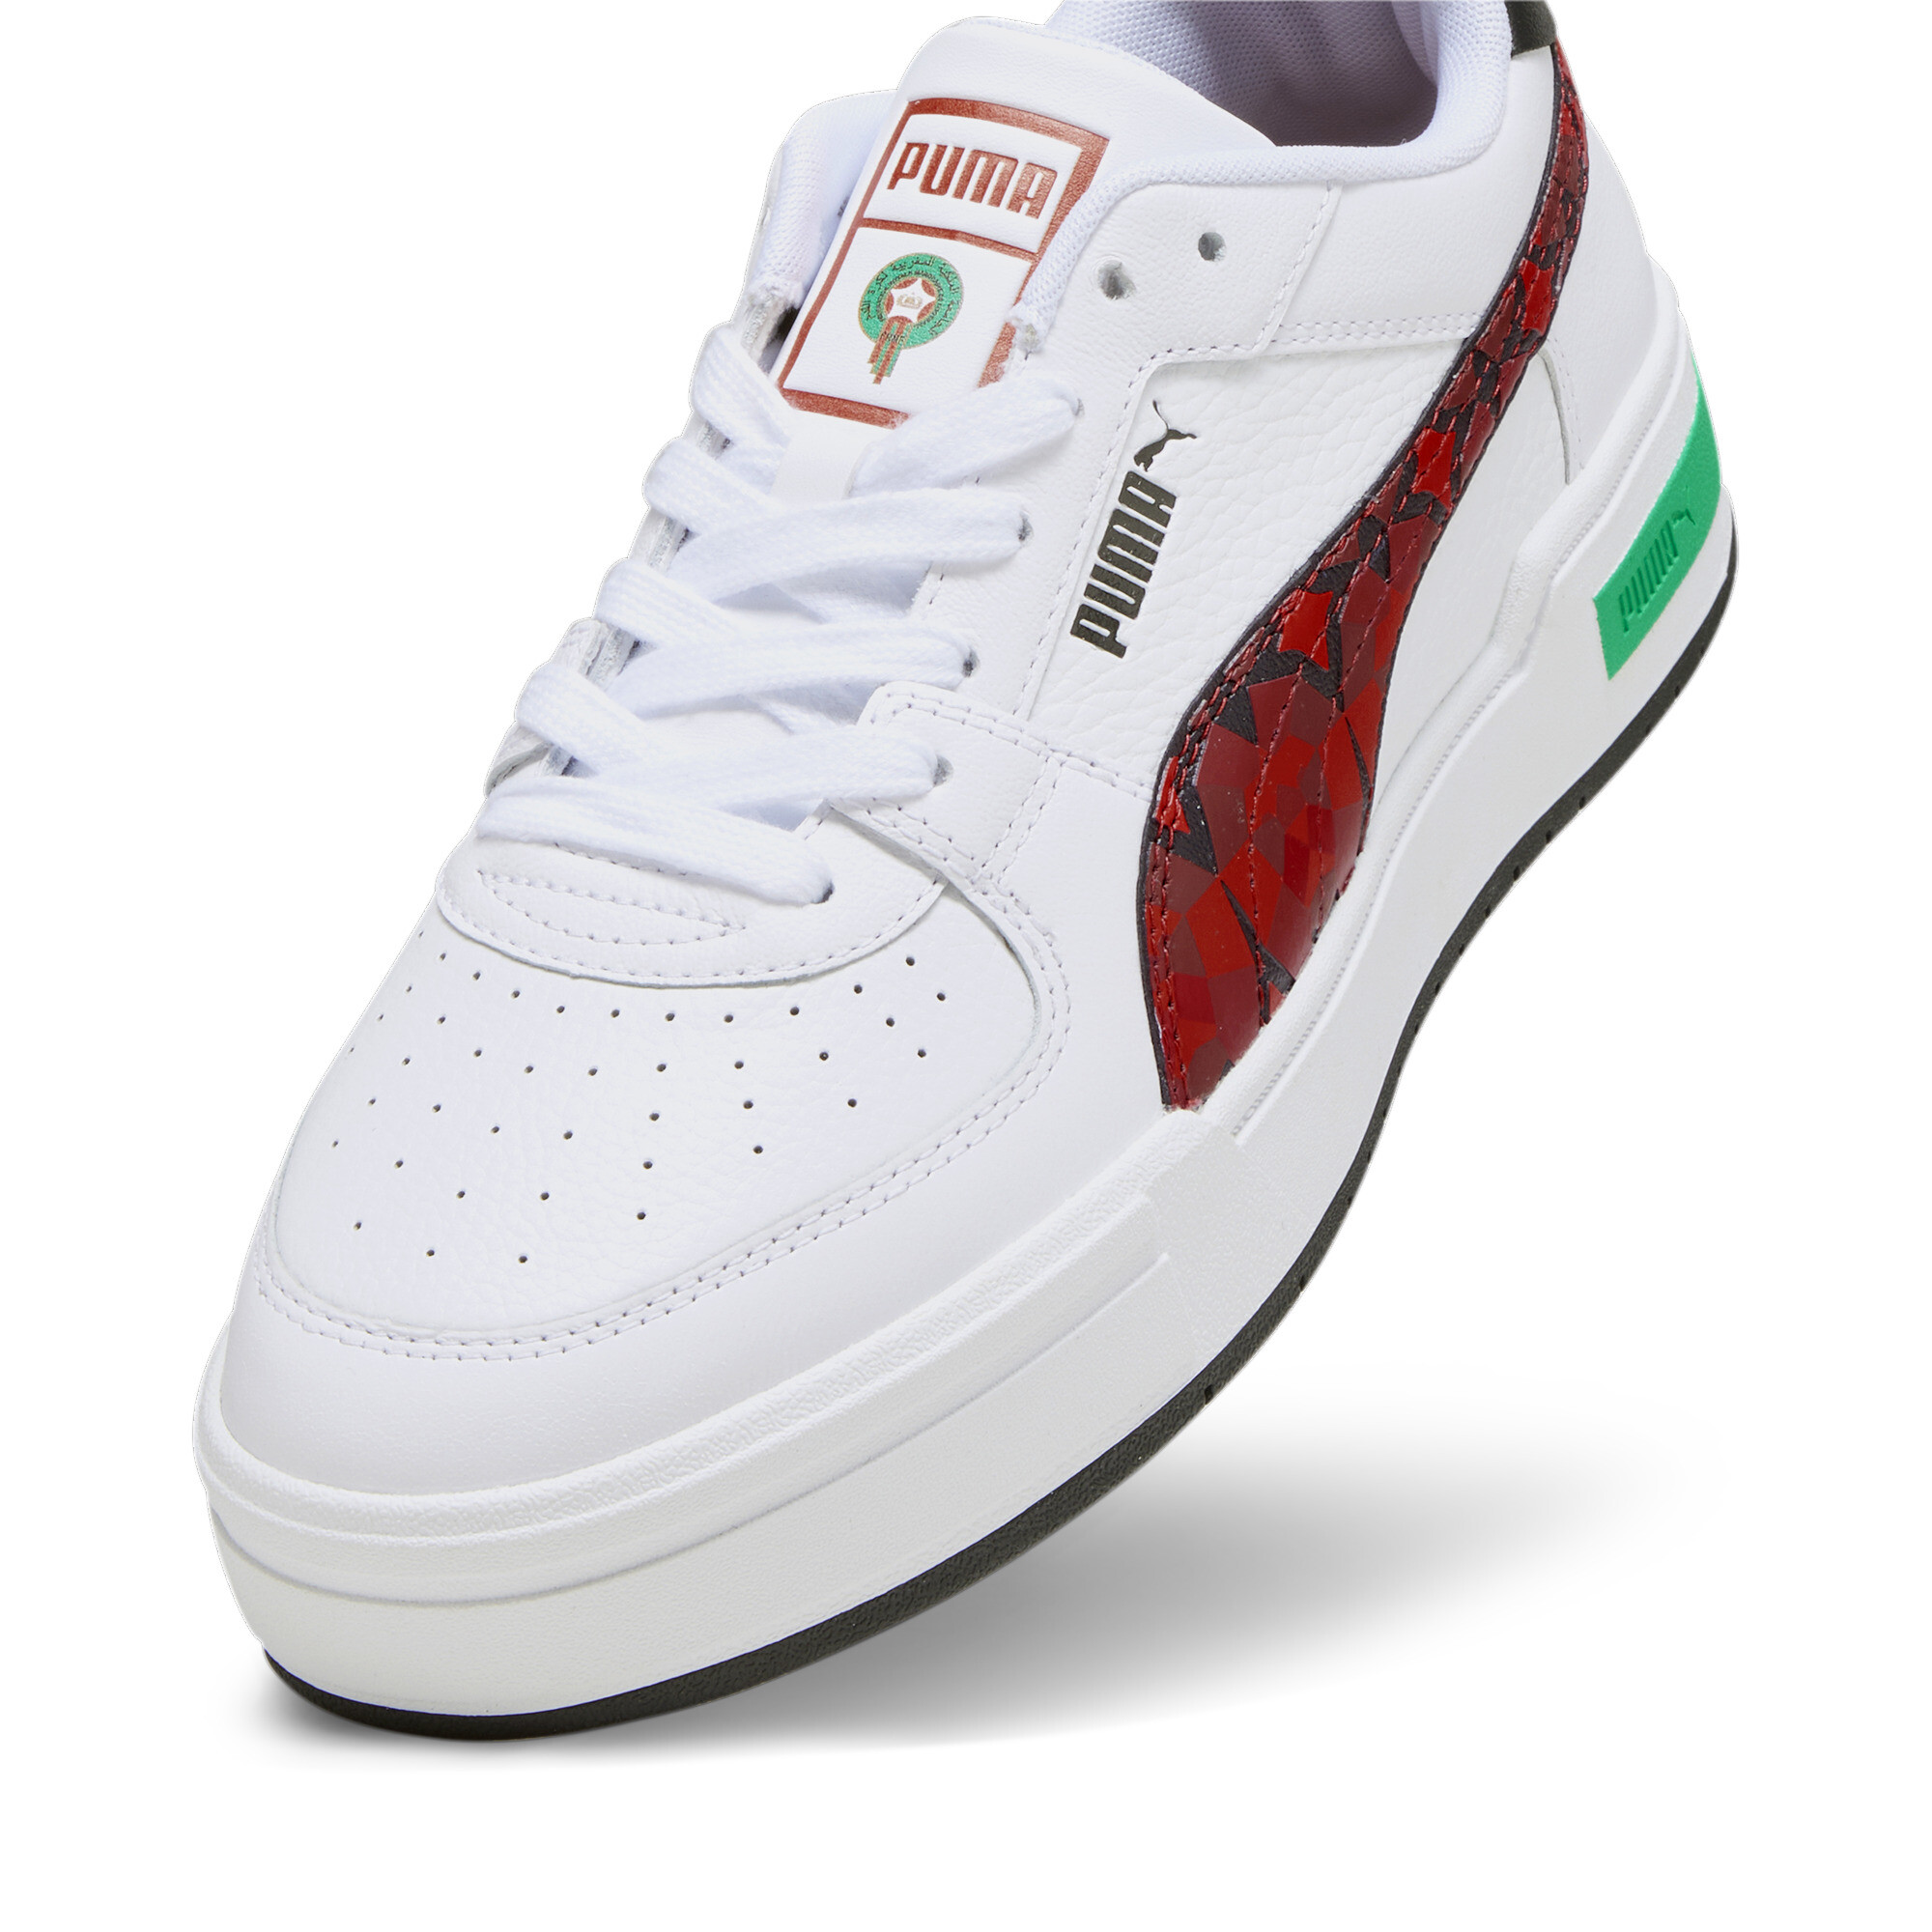 Men's PUMA CA Pro Morocco Football Sneakers In White, Size EU 40.5